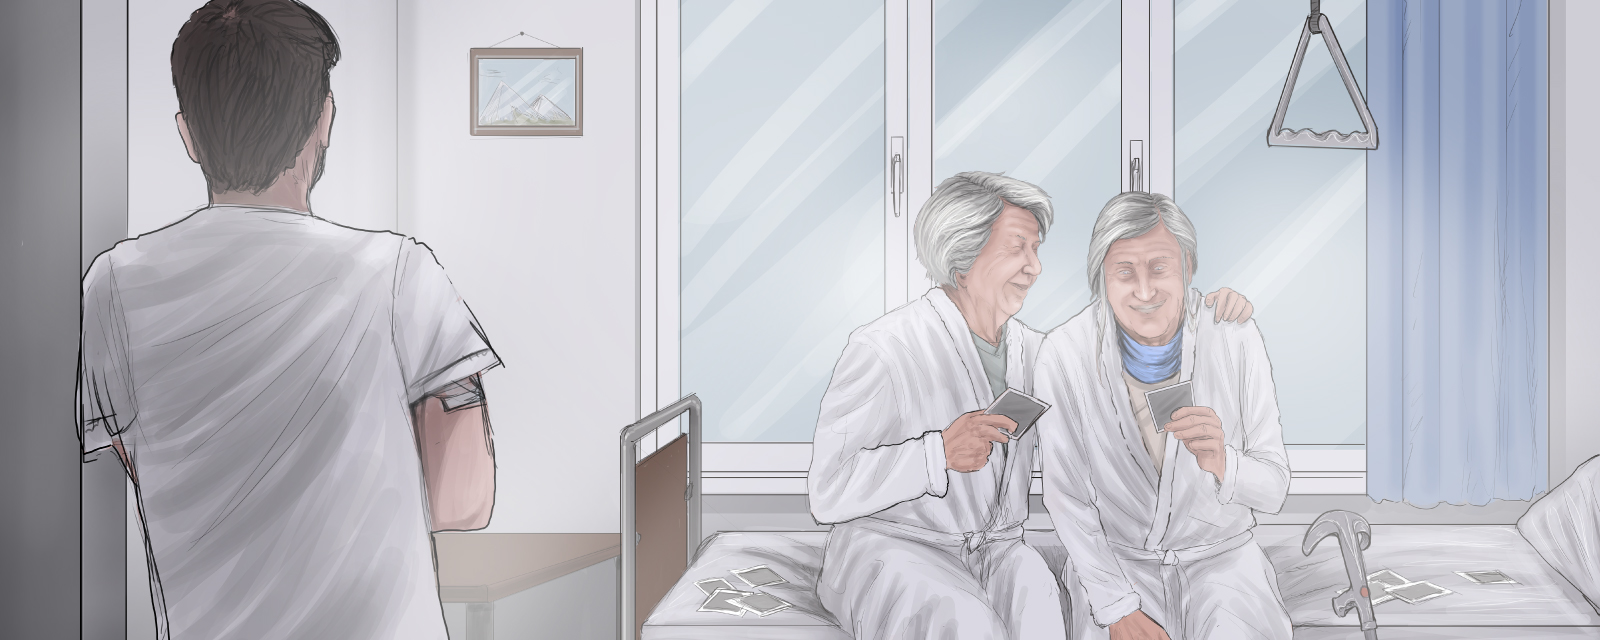 Pfleger beobachtet 2 Patientinnen, die miteinander reden